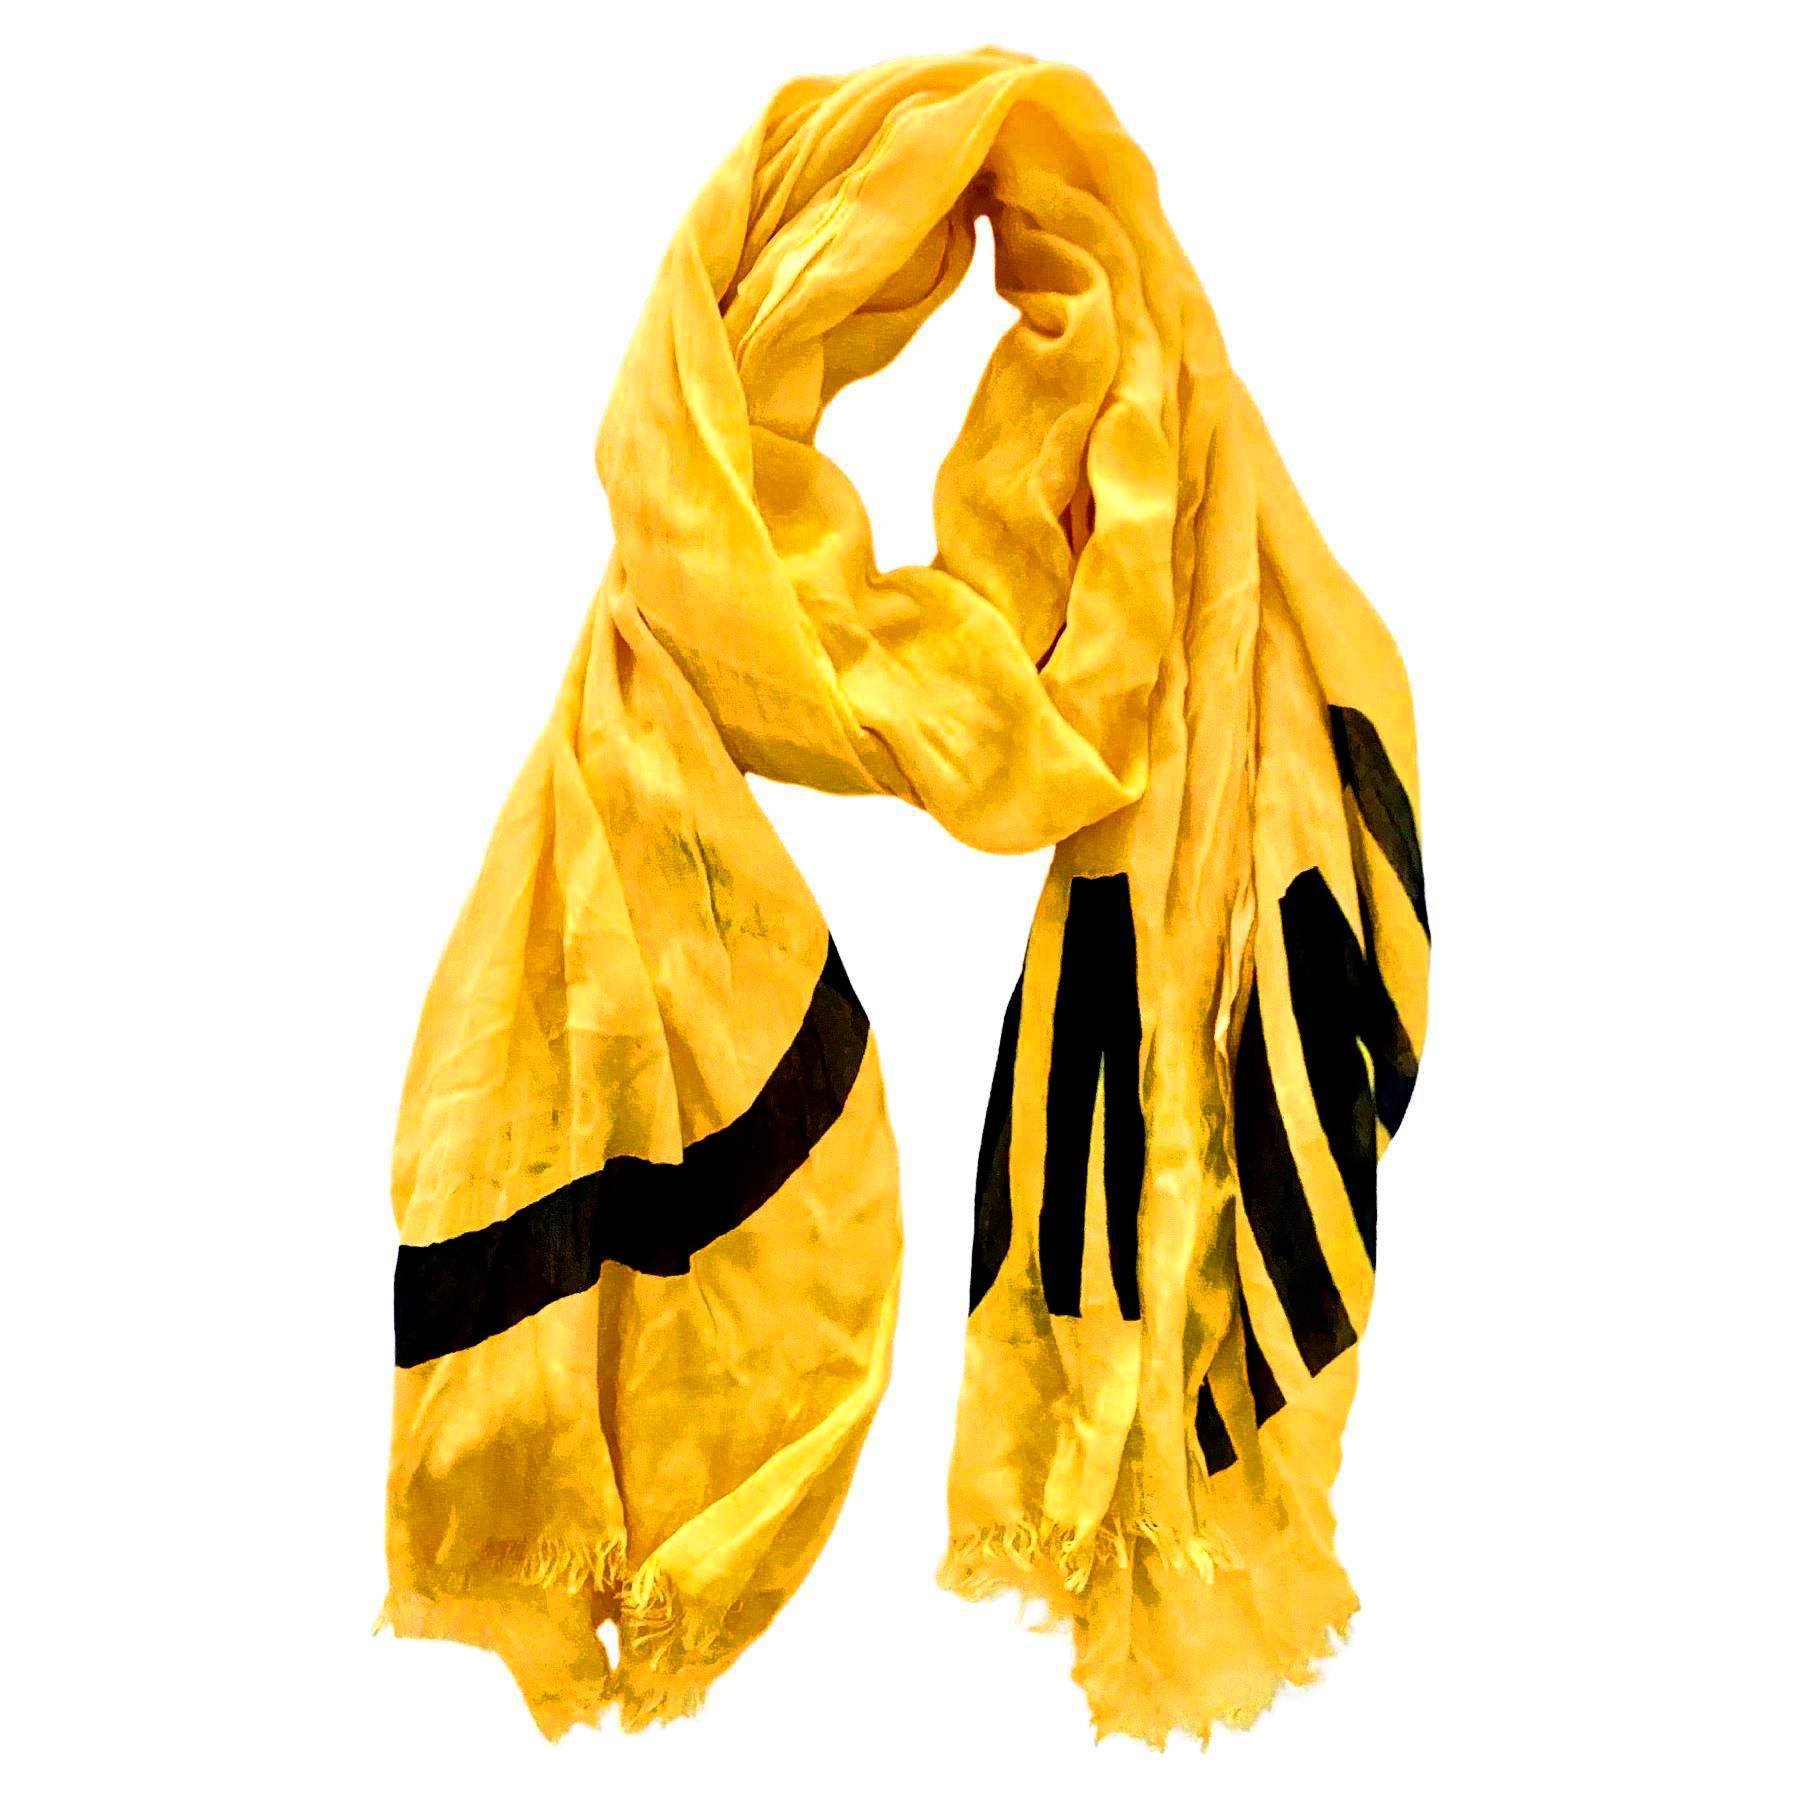 Moschino Gelbes Lächeln saures Gesicht in gelber weicher Baumwolle, Made in Italy  Dieser luxuriöse Schal wurde mit viel Liebe zum Detail und in höchster Qualität gefertigt und bietet ein zeitlos stilvolles Aussehen und Gefühl.

Zustand: gebraucht,